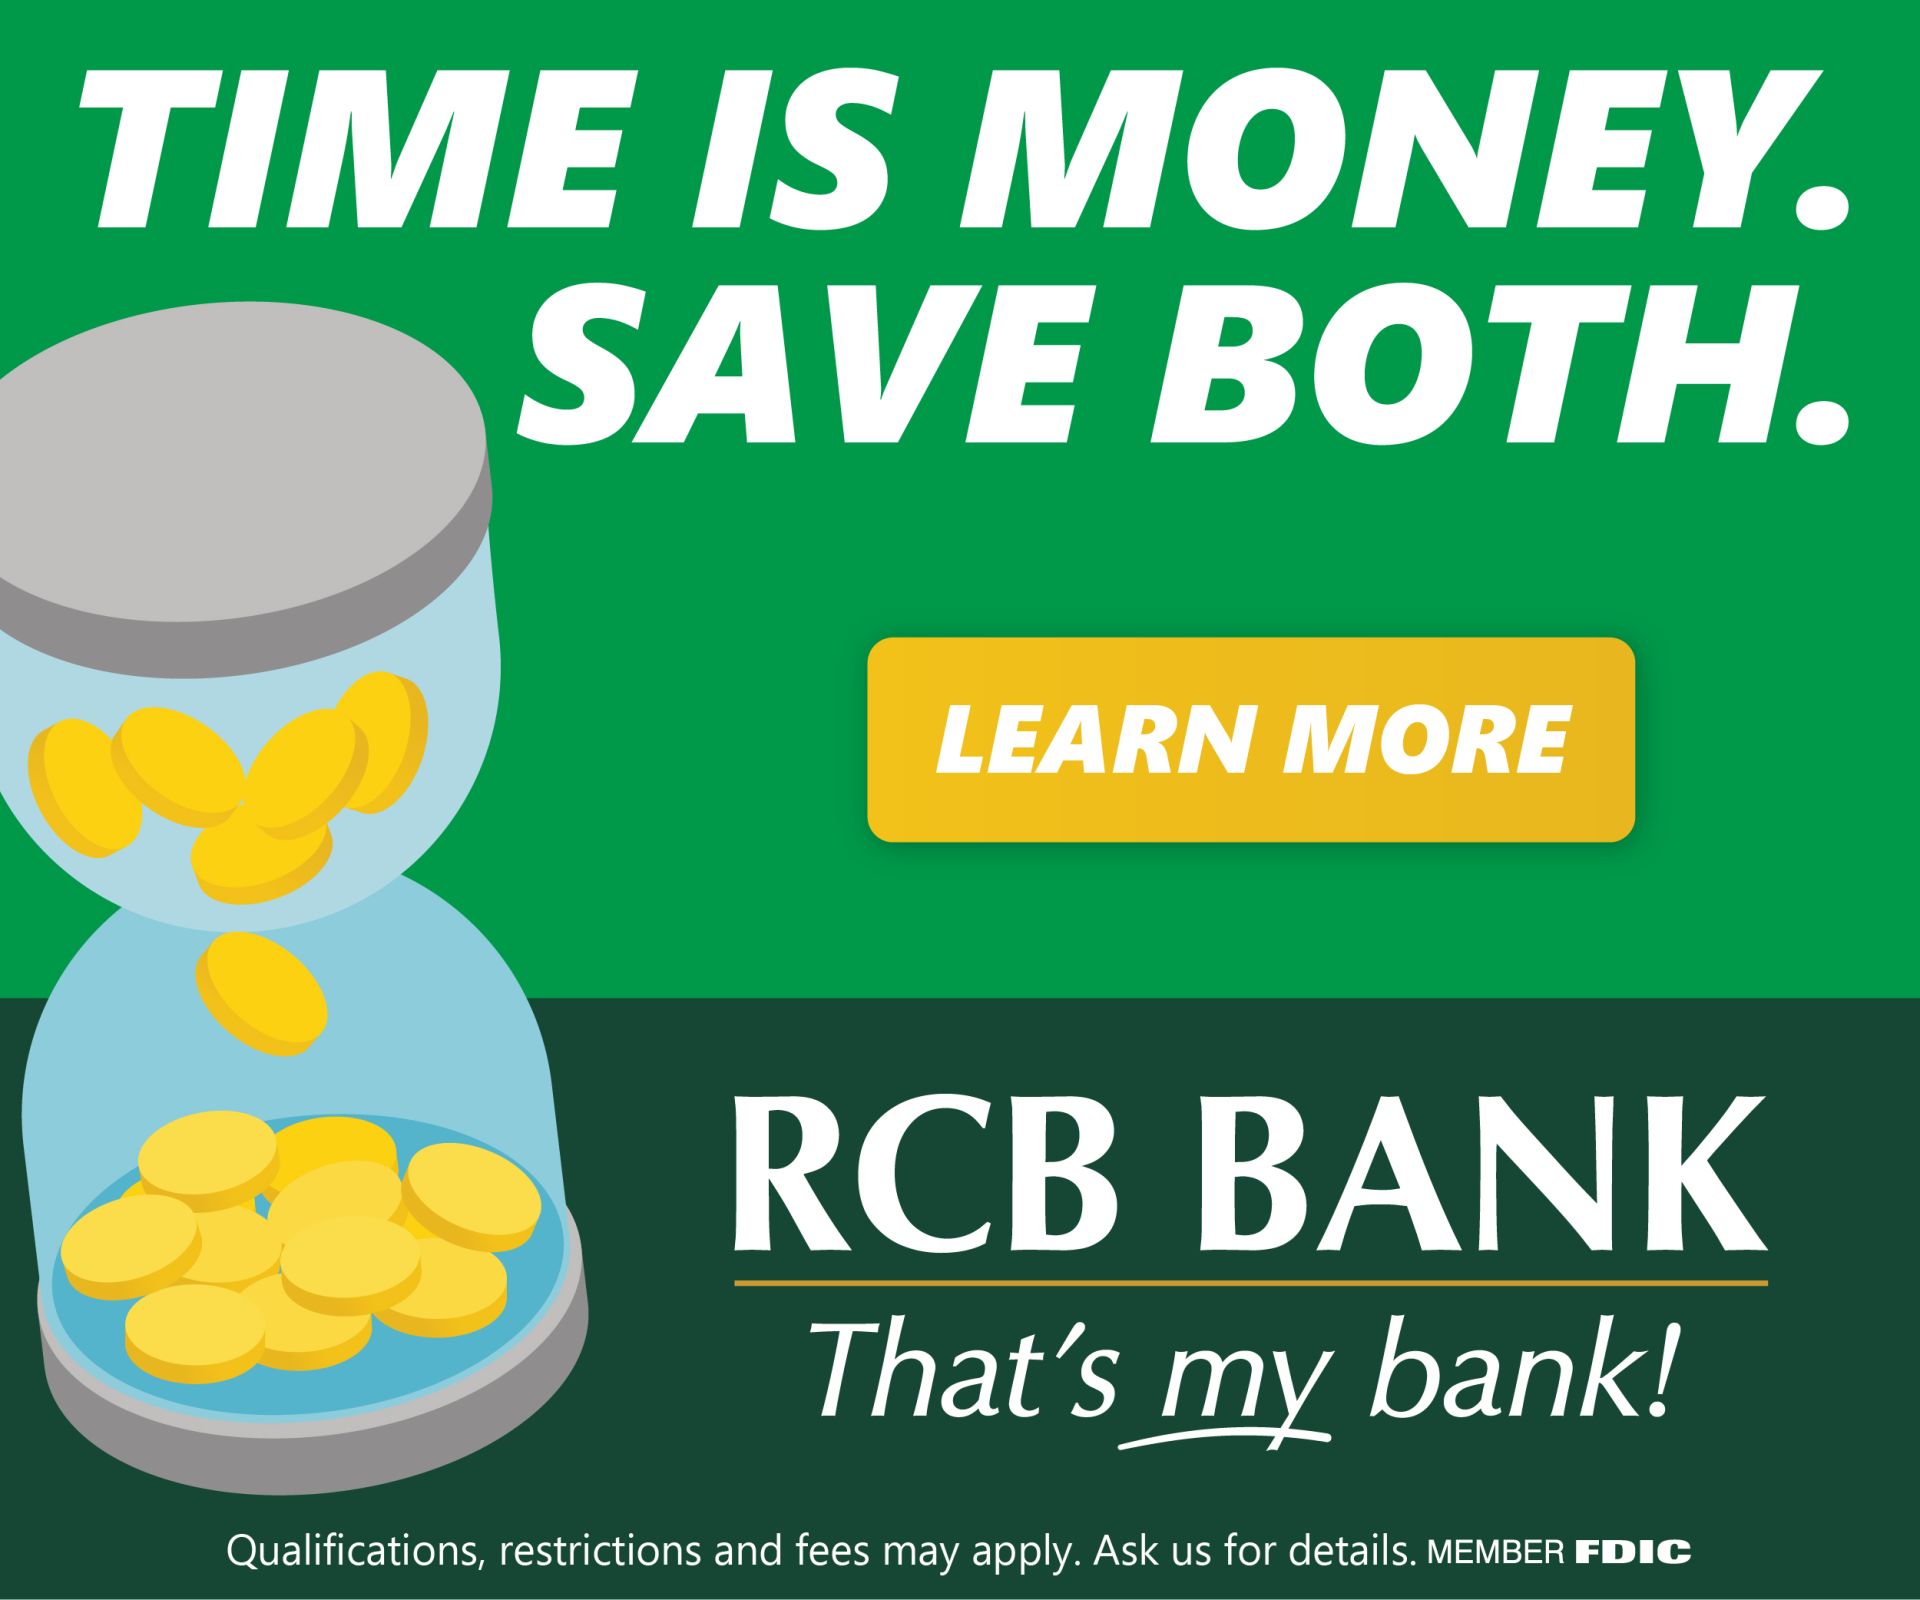 RCB_bank_ad